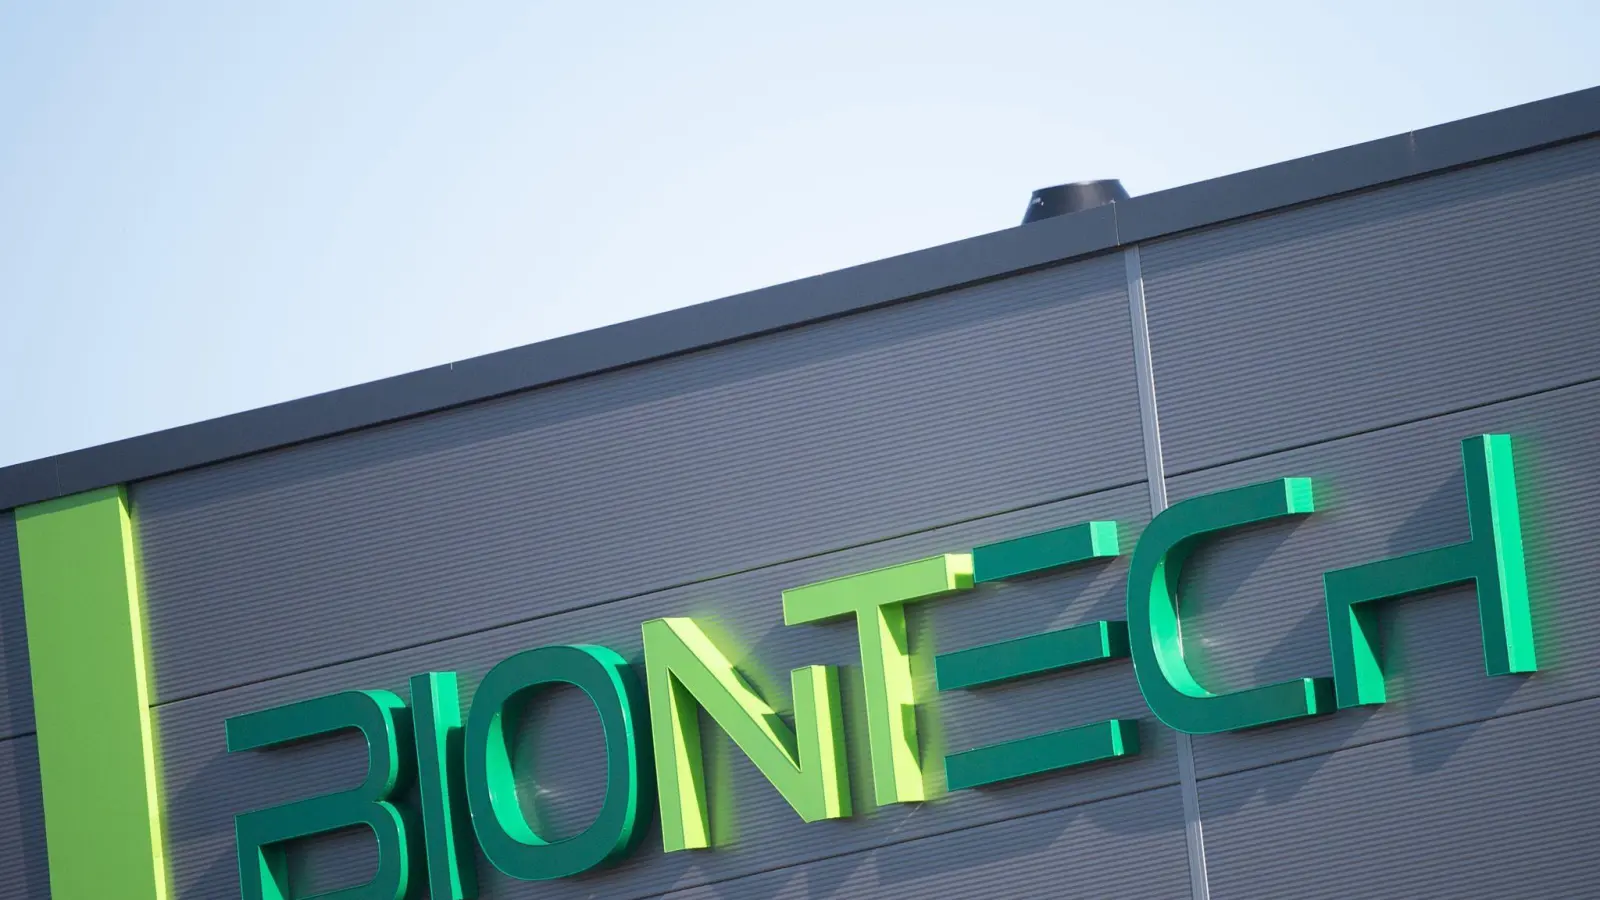 2022 fuhr Biontech insgesamt einen Umsatz von 17,3 Milliarden Euro ein nach knapp 19 Milliarden im Jahr davor. (Foto: Sebastian Gollnow/dpa)